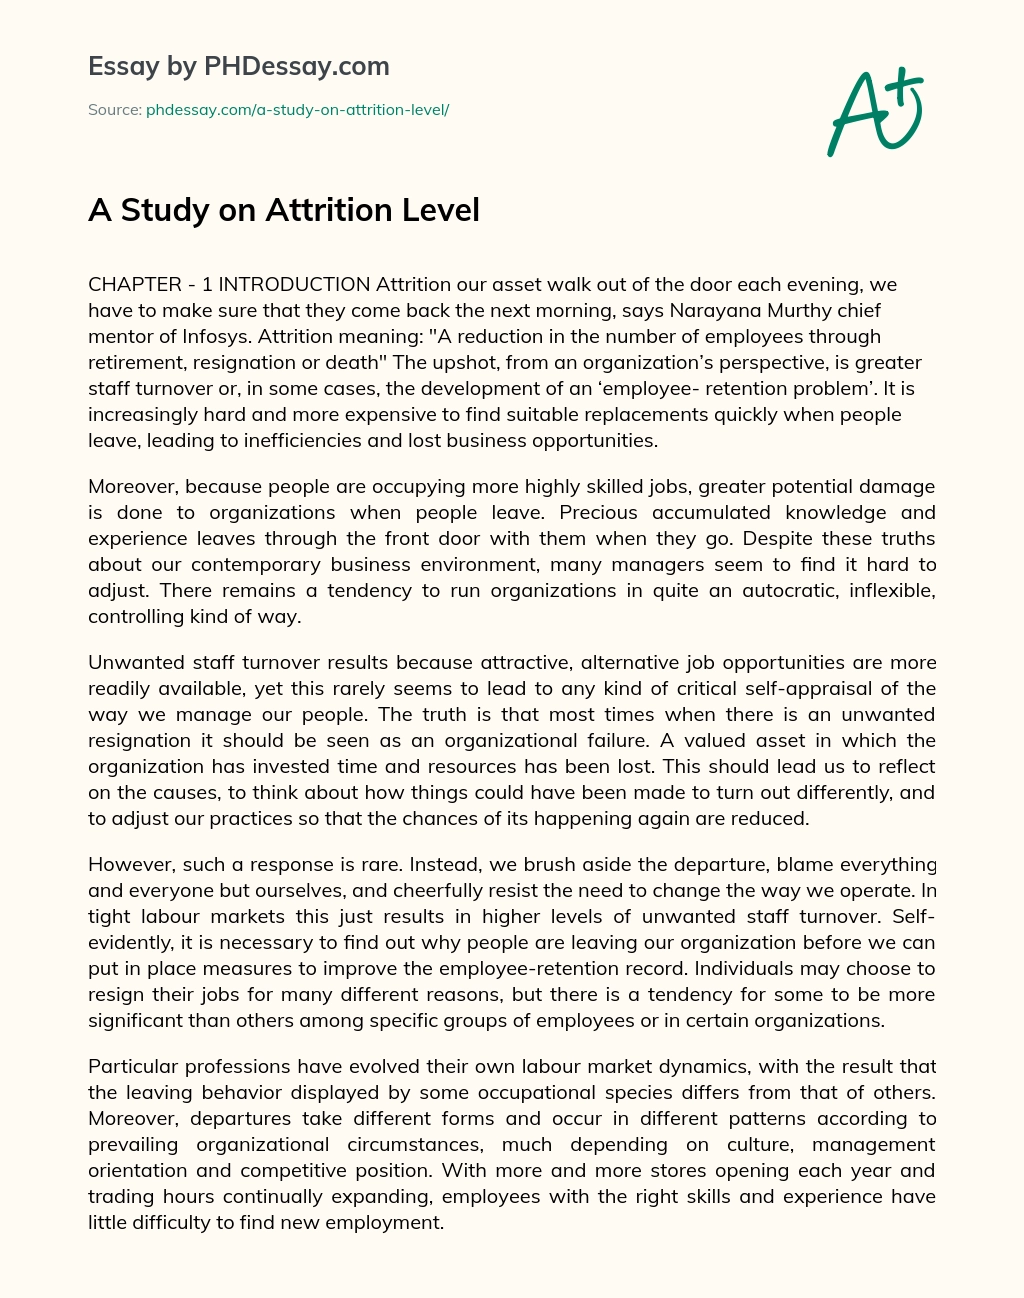 A Study on Attrition Level essay